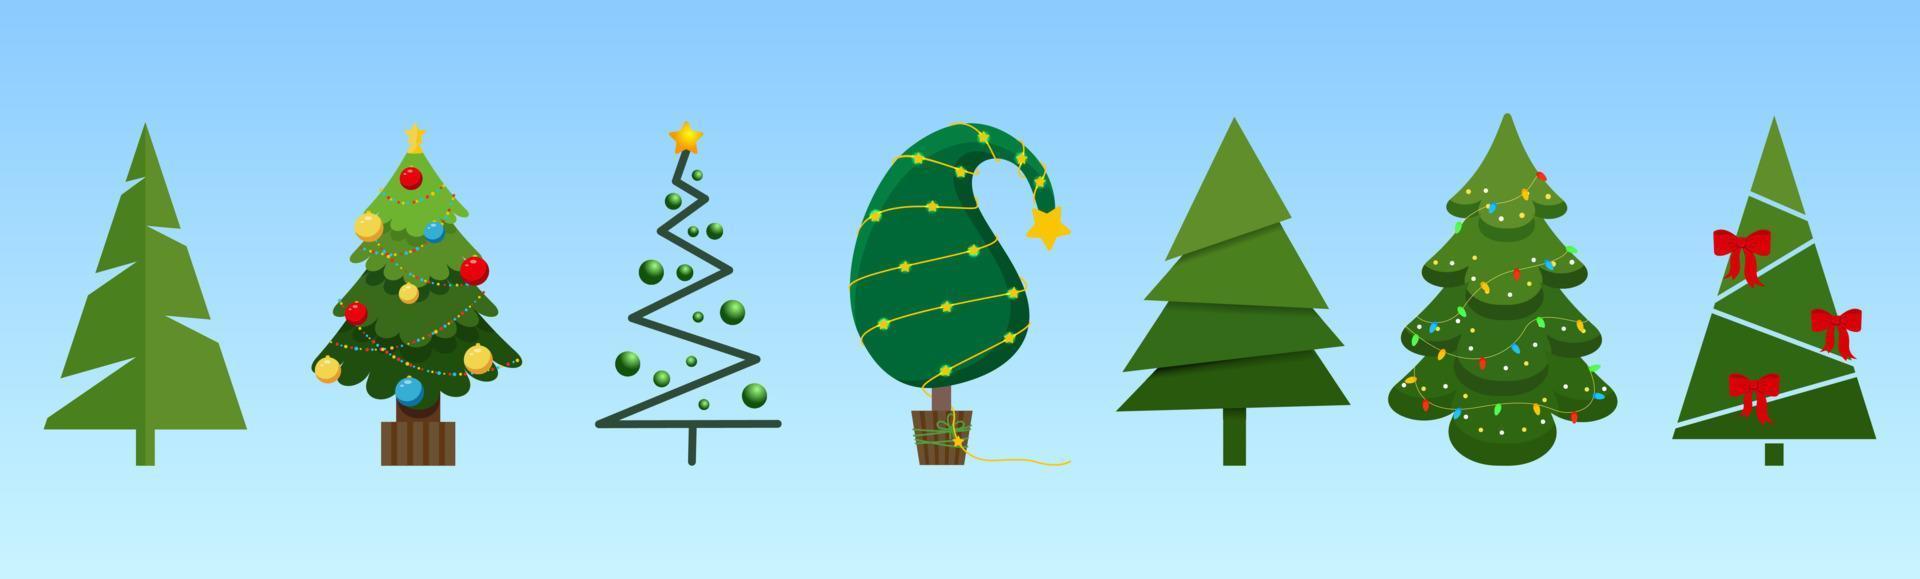 vector festivo conjunto de árboles de navidad con decoración